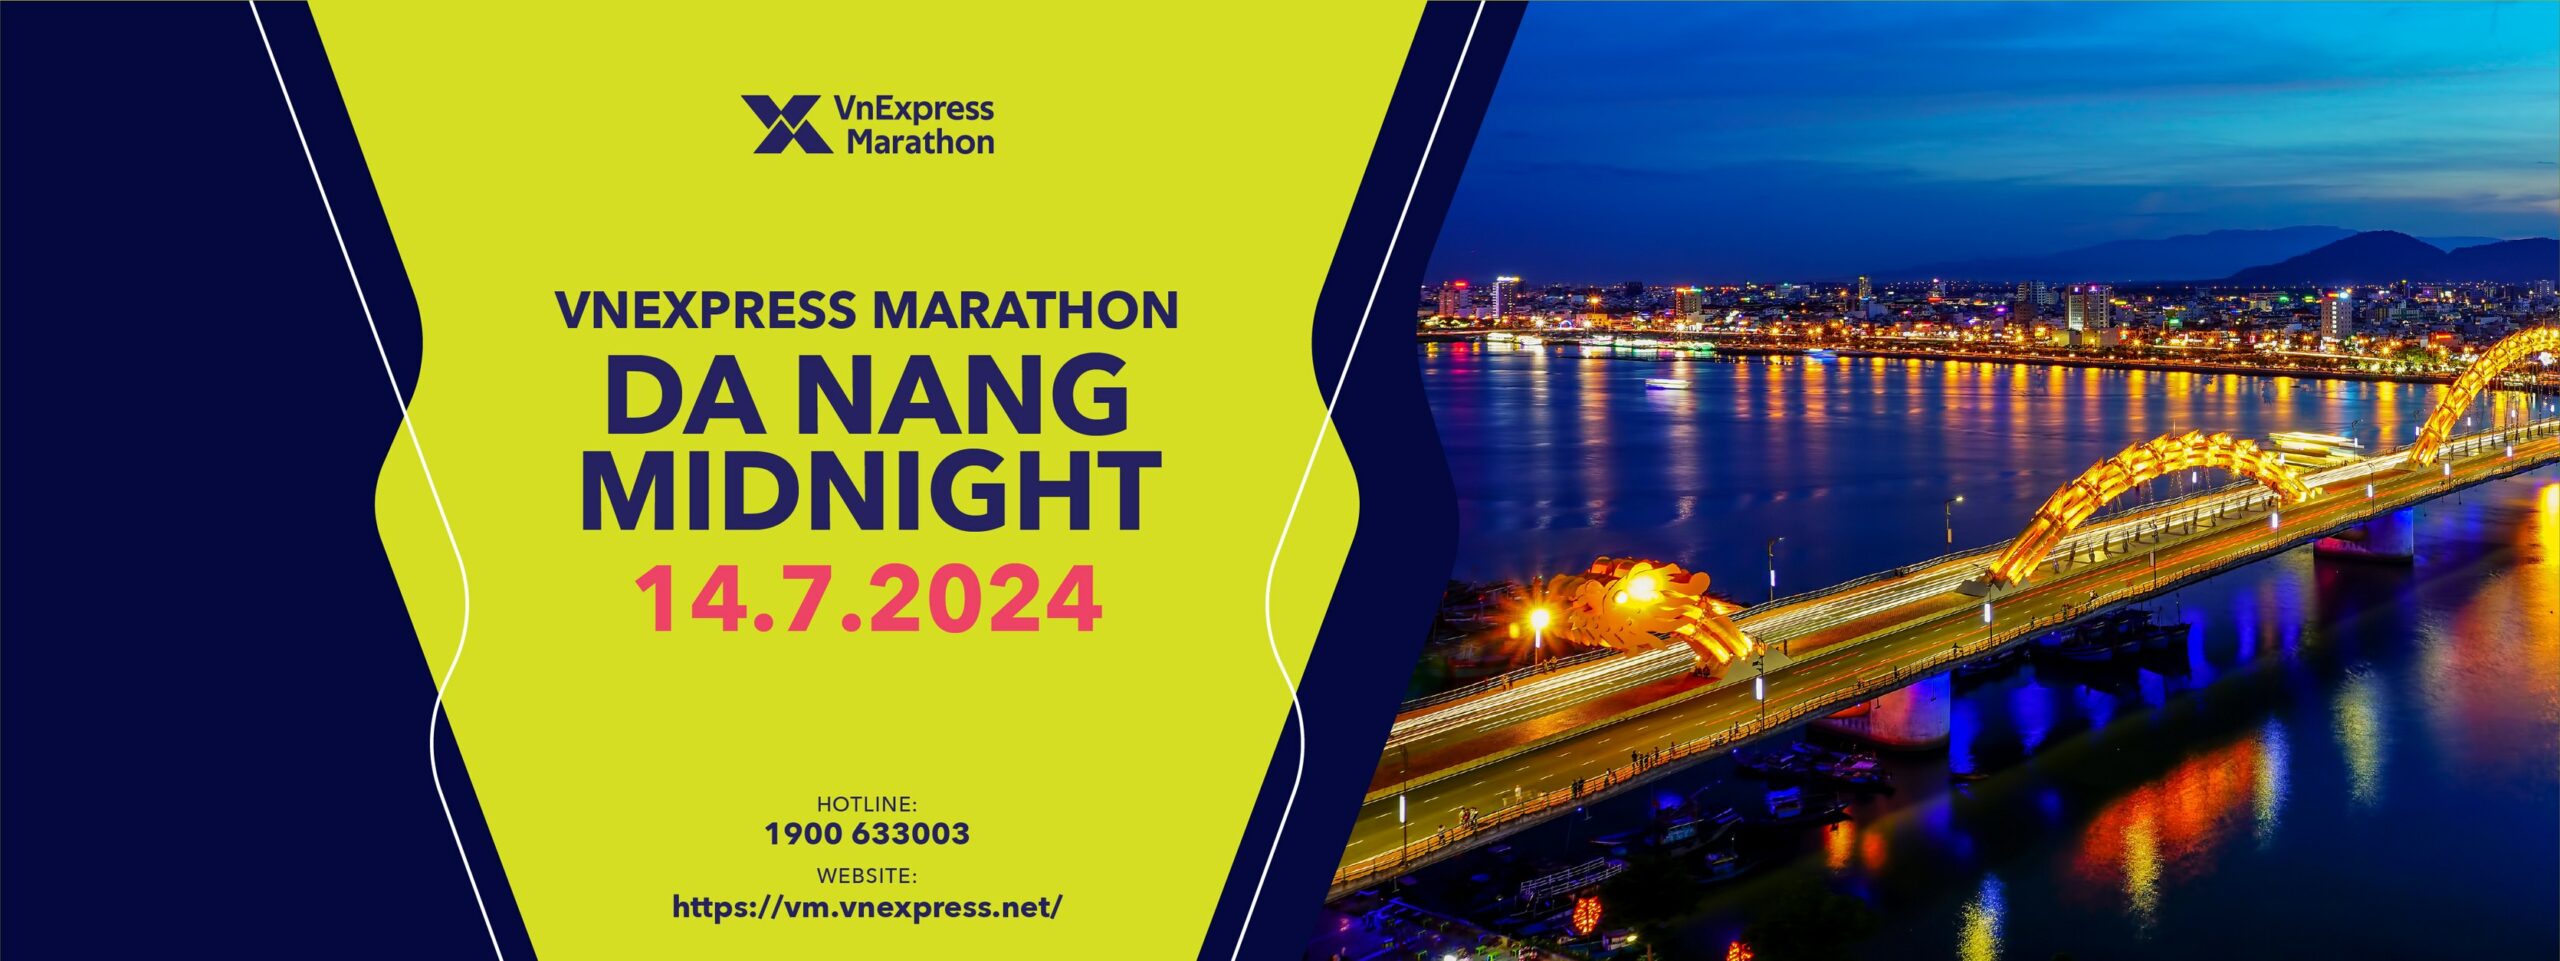 VnExpress Marathon Da Nang Midnight 2024 - vnexpress marathon danang midnight scaled